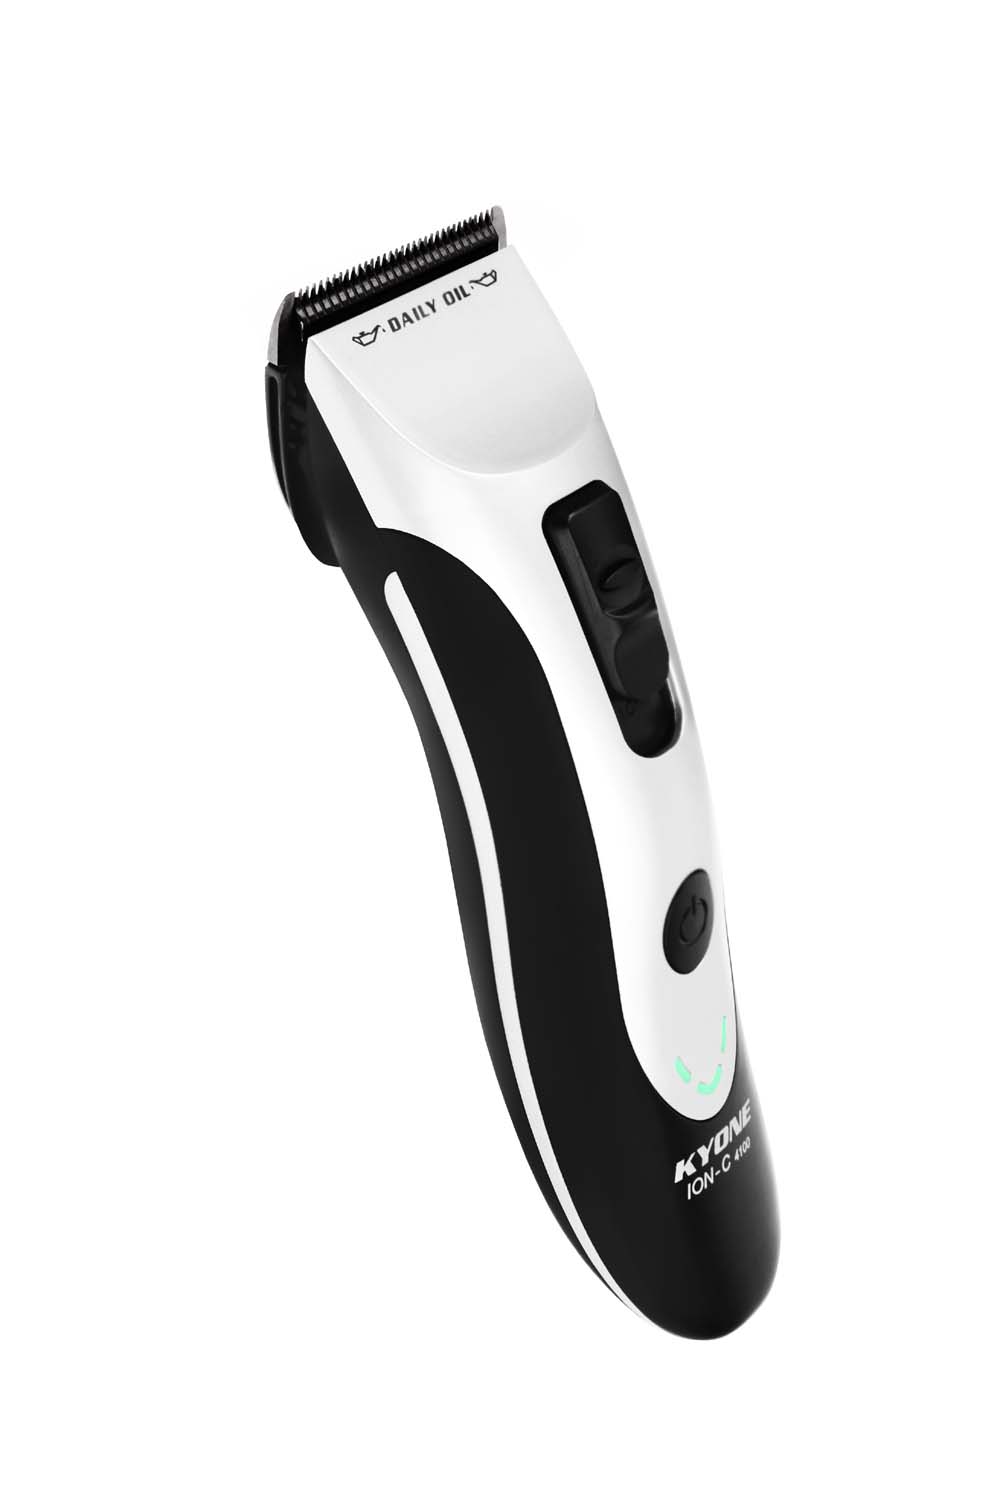 Kyone Hochleistungs-Haarschneidemaschine ION C4100